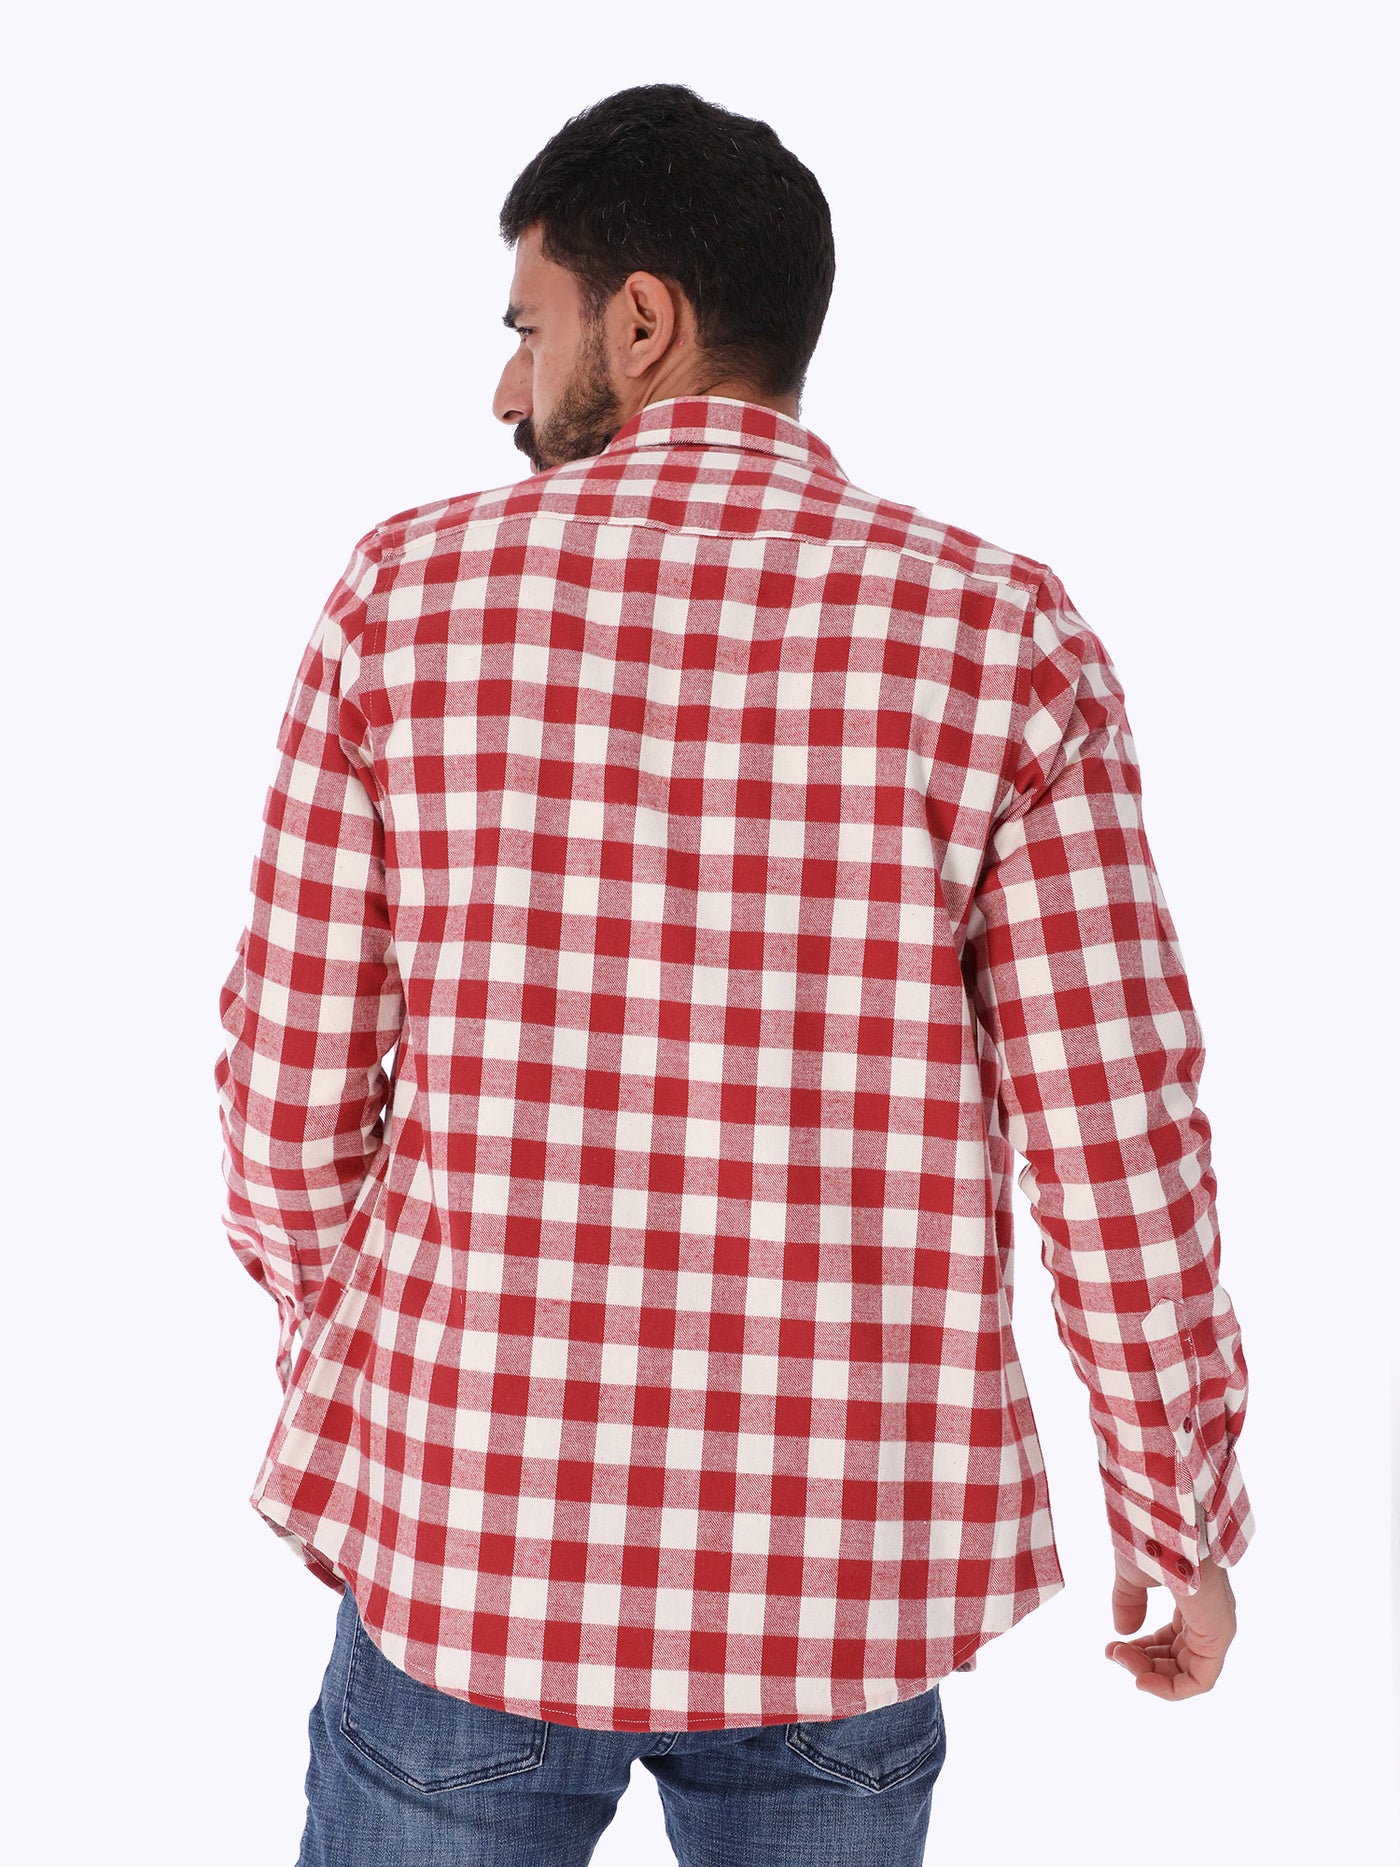 Shirt - Gingham Checkered